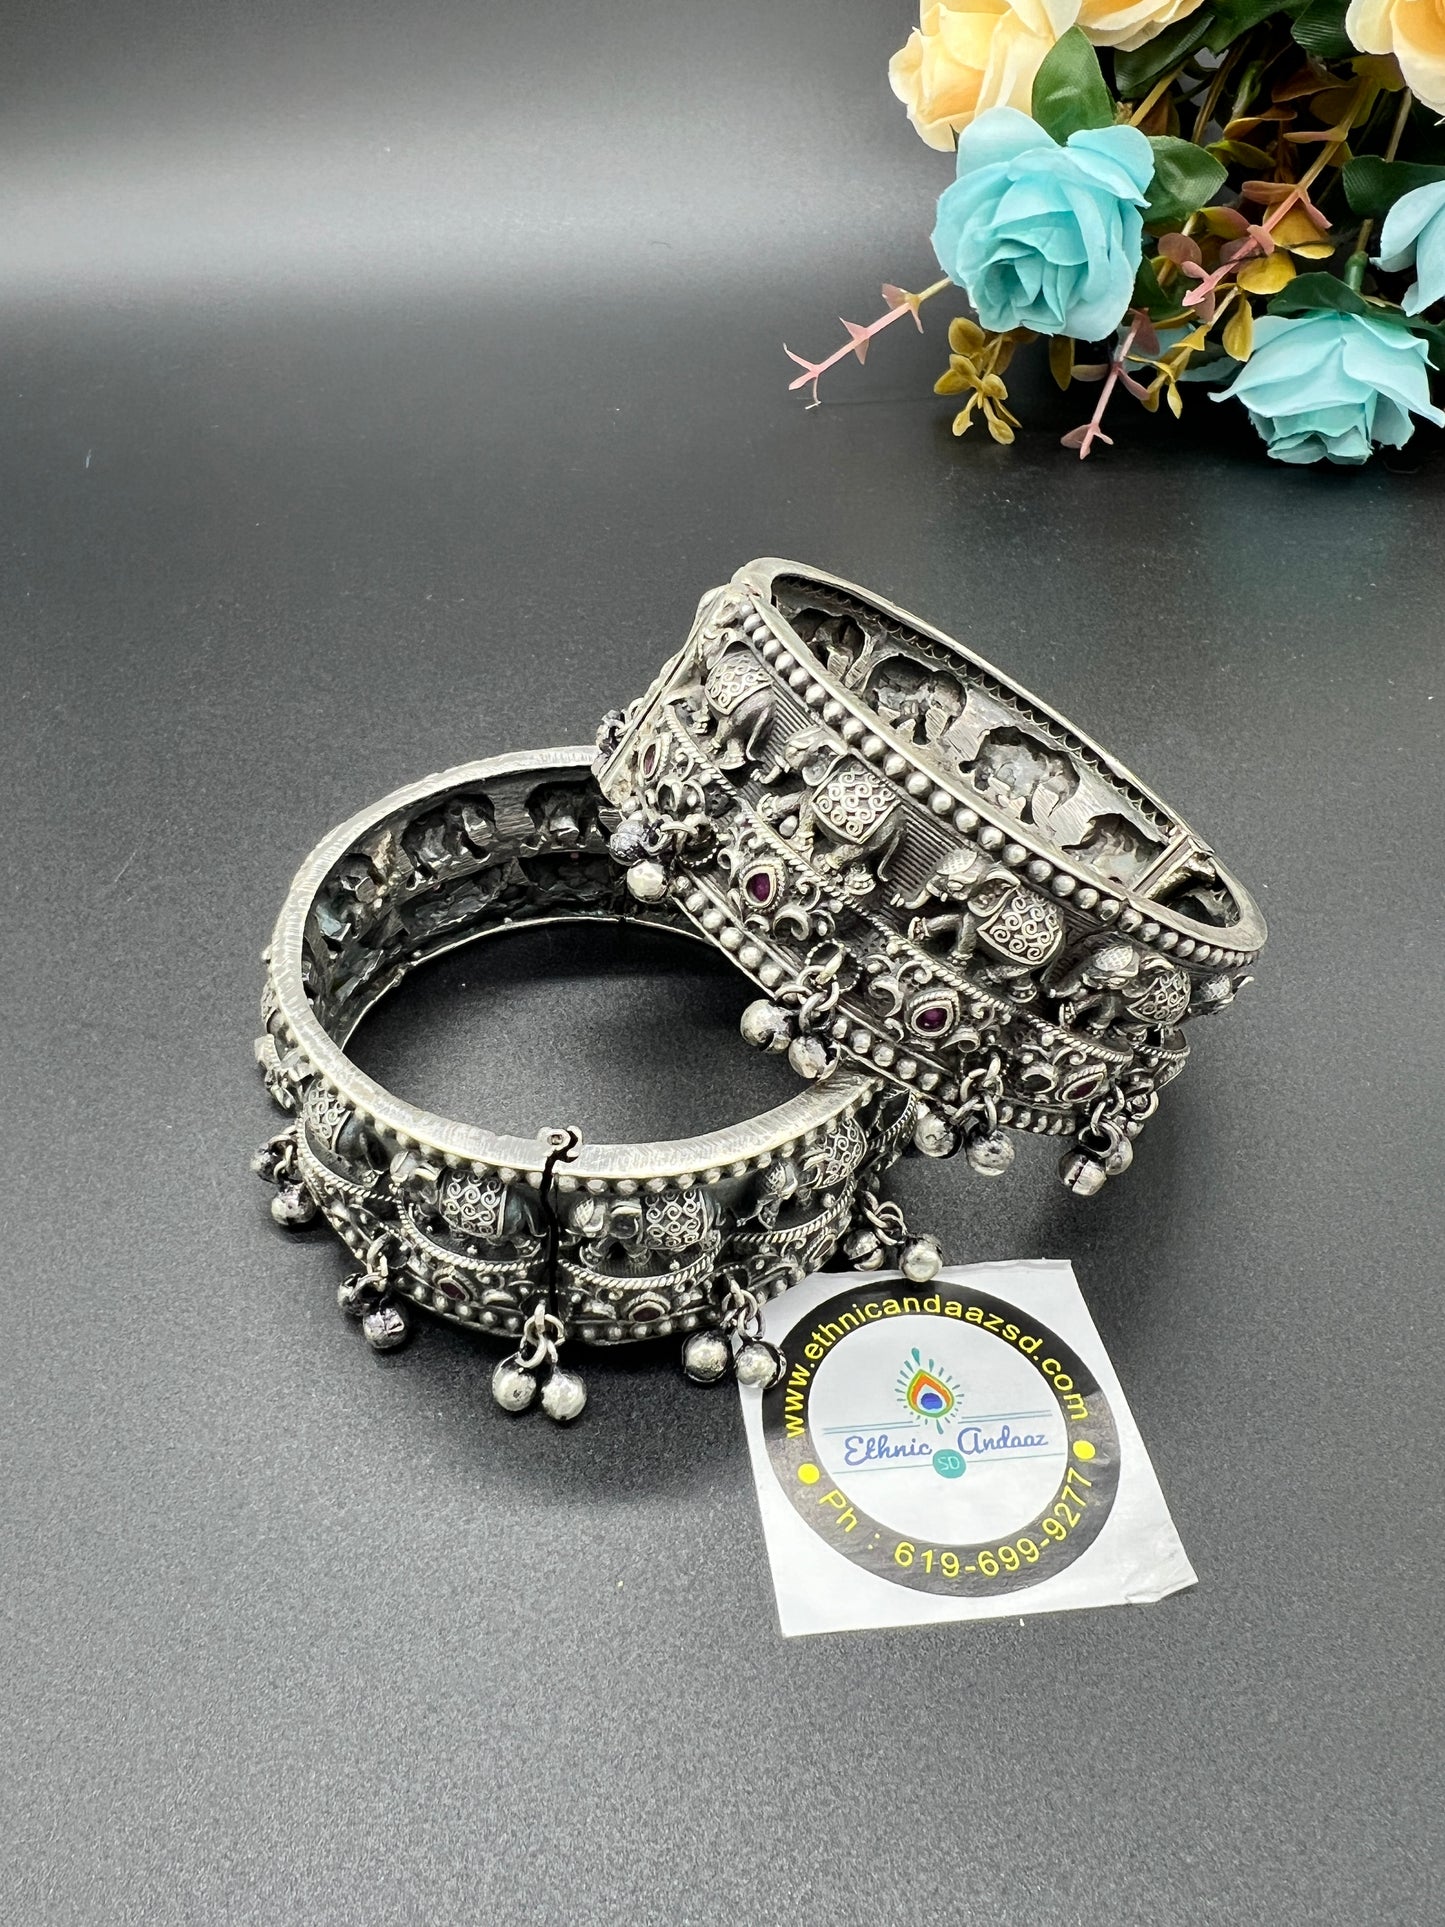 Bangle
Kada
Oxidised
German silver 
Indian jewelry